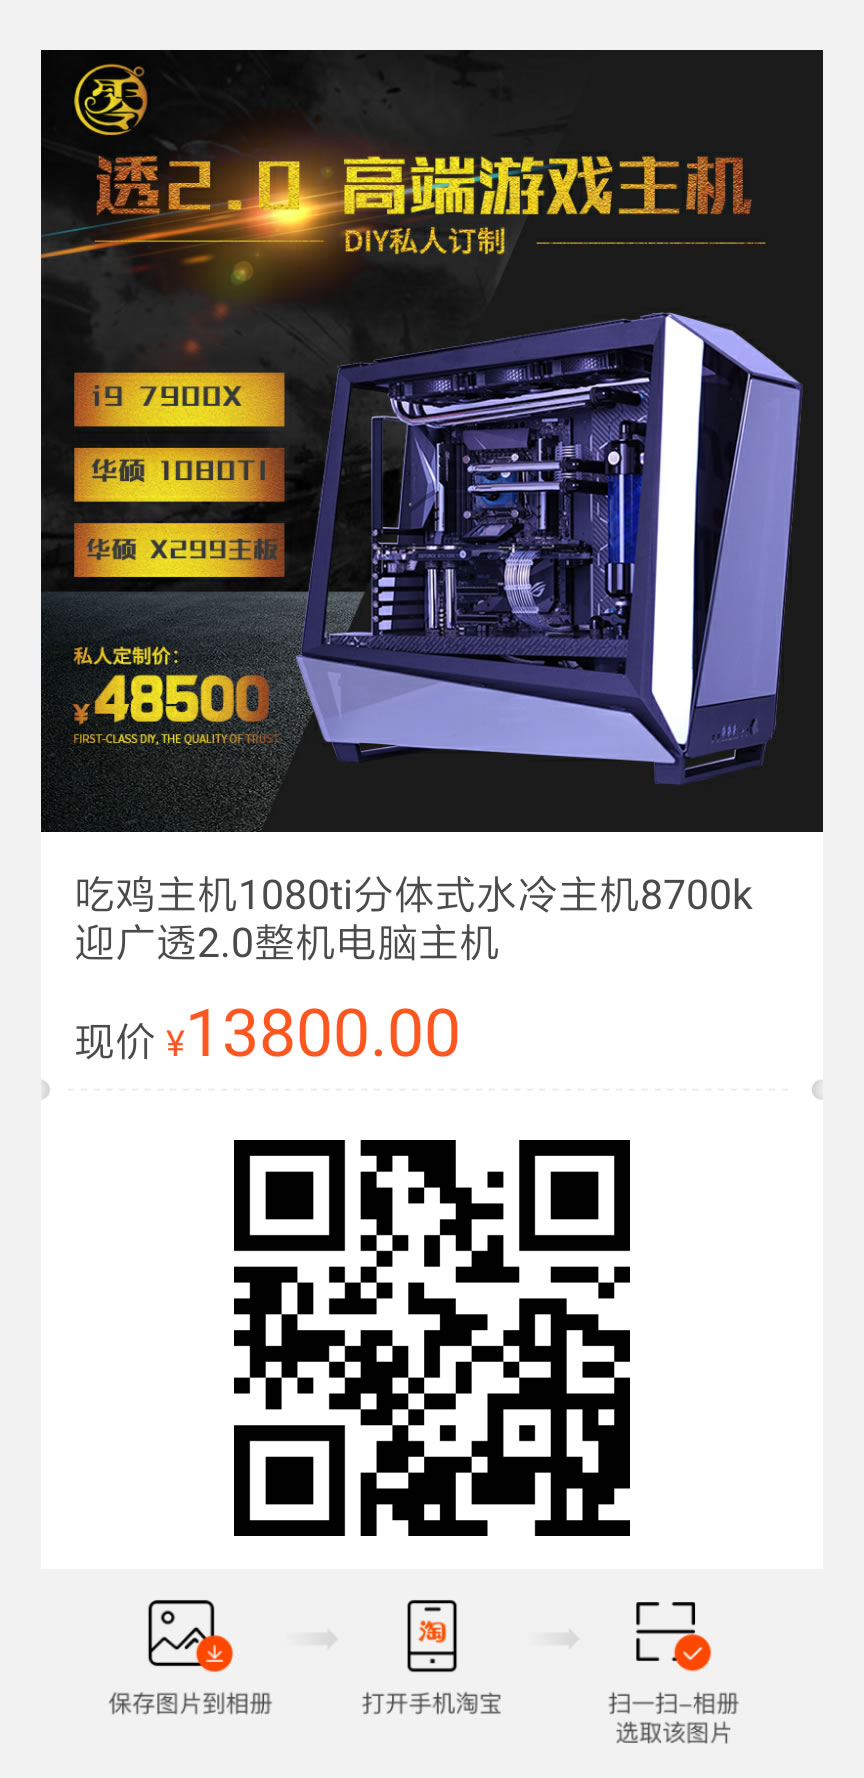 In Win Tou 2.0“透”机箱RGB水冷MOD装机方案图片